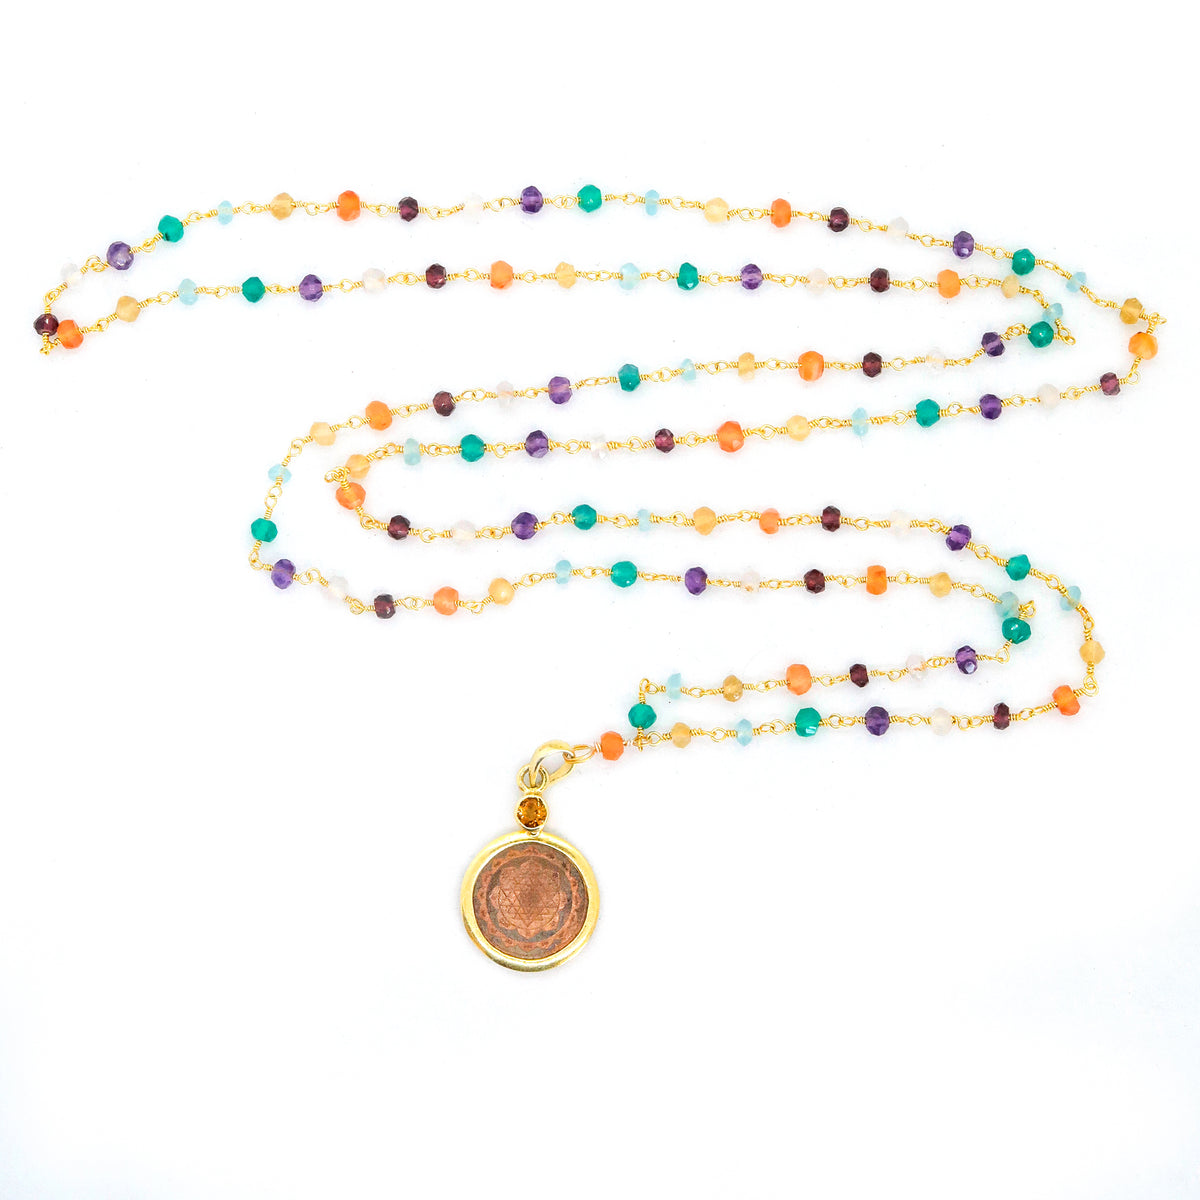 Ns-00806 Chakra Spiritual Buddhist Sri Yantra Pendant Necklace